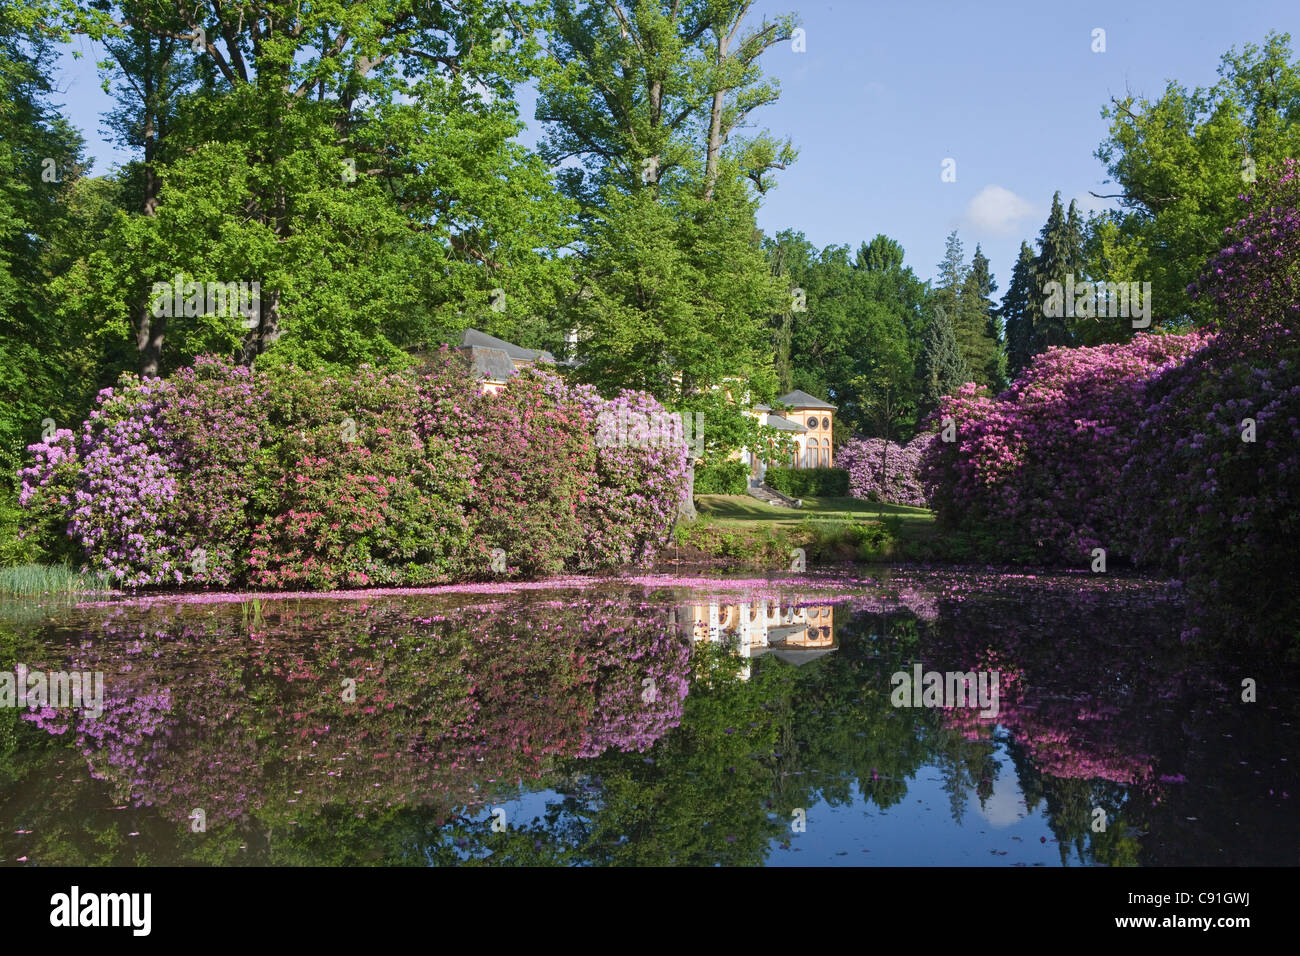 Rhododendron rose pétales flottant dans l'eau, paysage, Breidings jardin jardin, Soltau, Basse-Saxe, Allemagne Banque D'Images